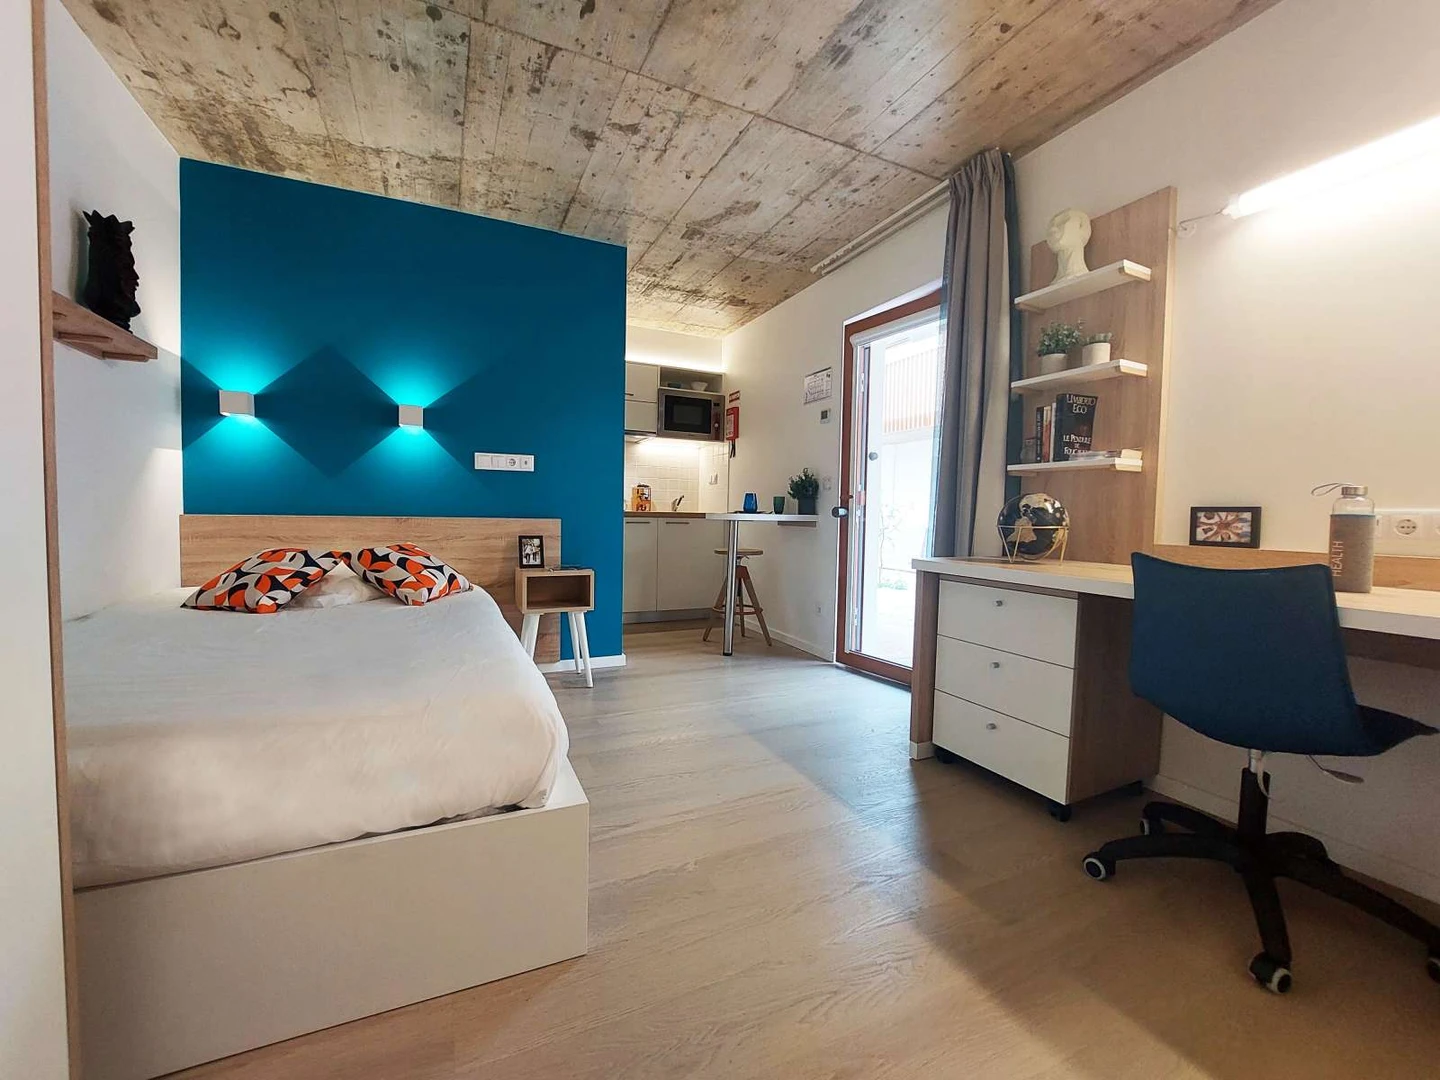 Porto de çift kişilik yataklı kiralık oda